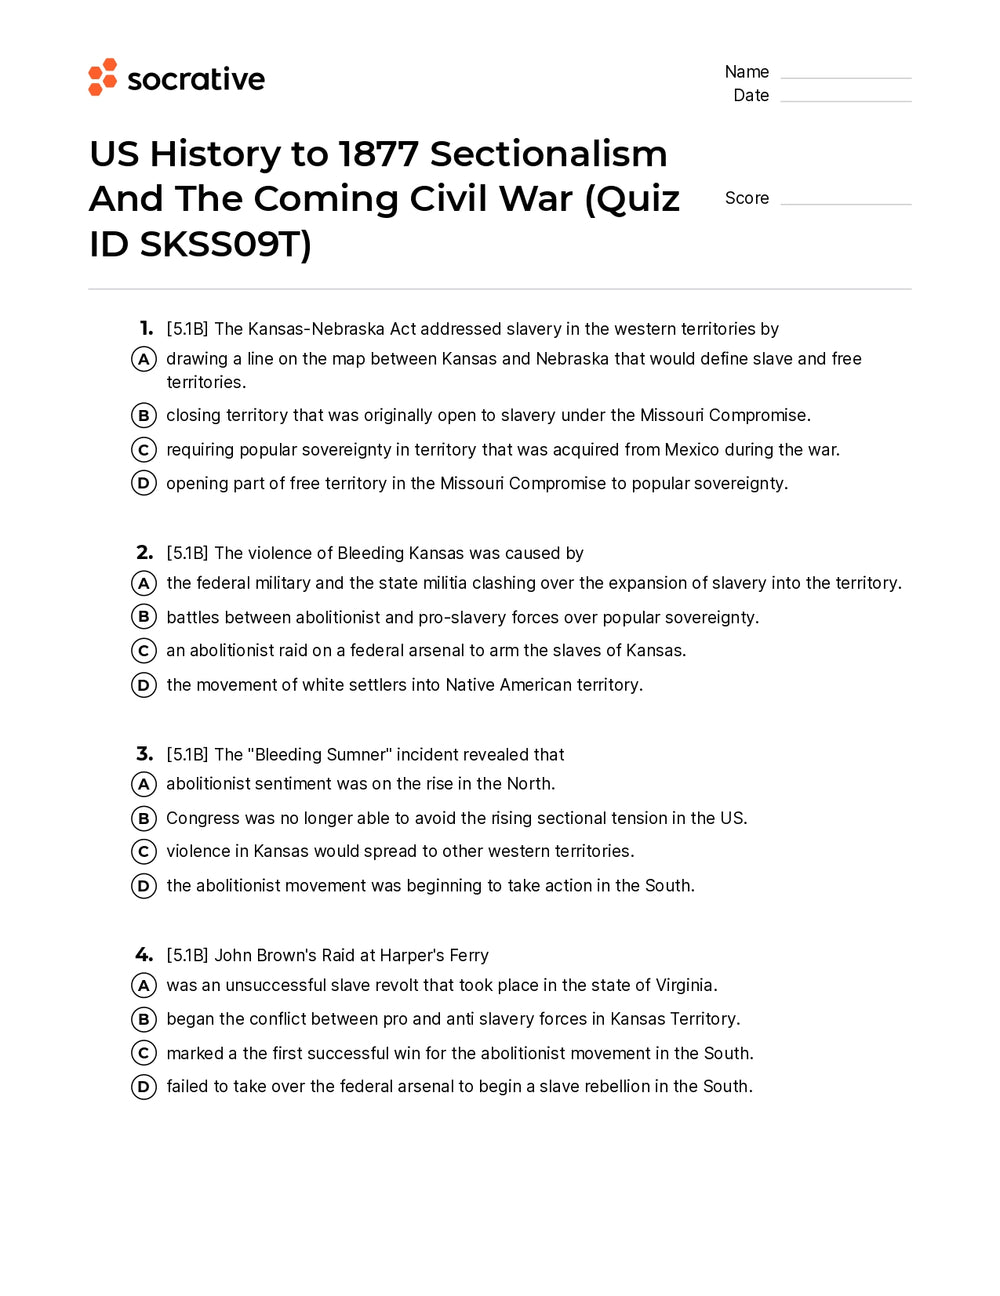 A History of War Quiz